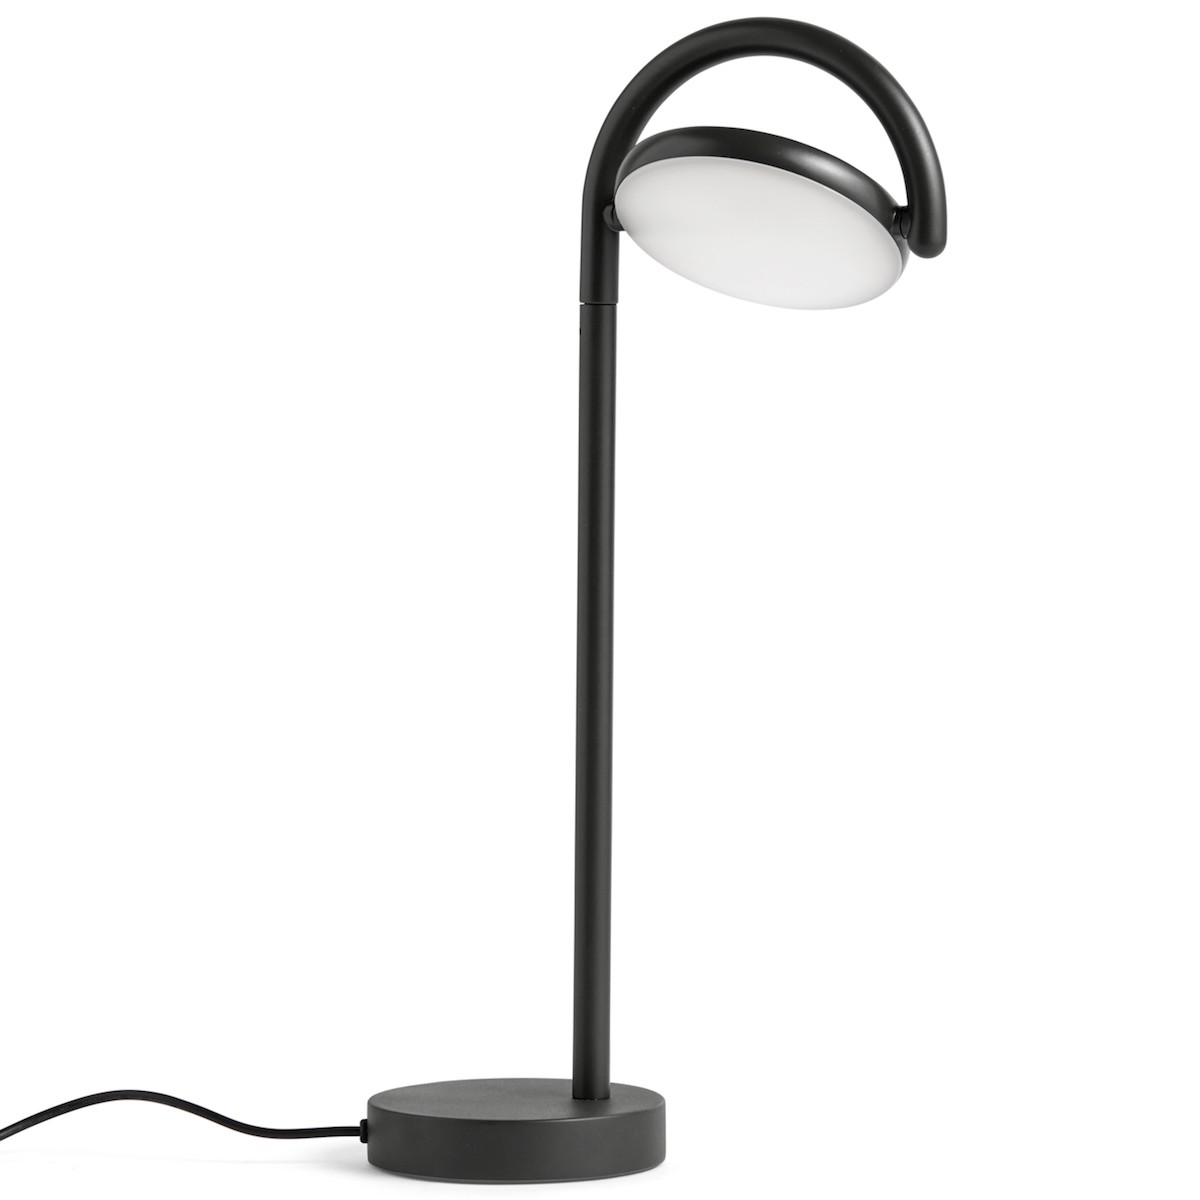 soft black - Marselis table lamp